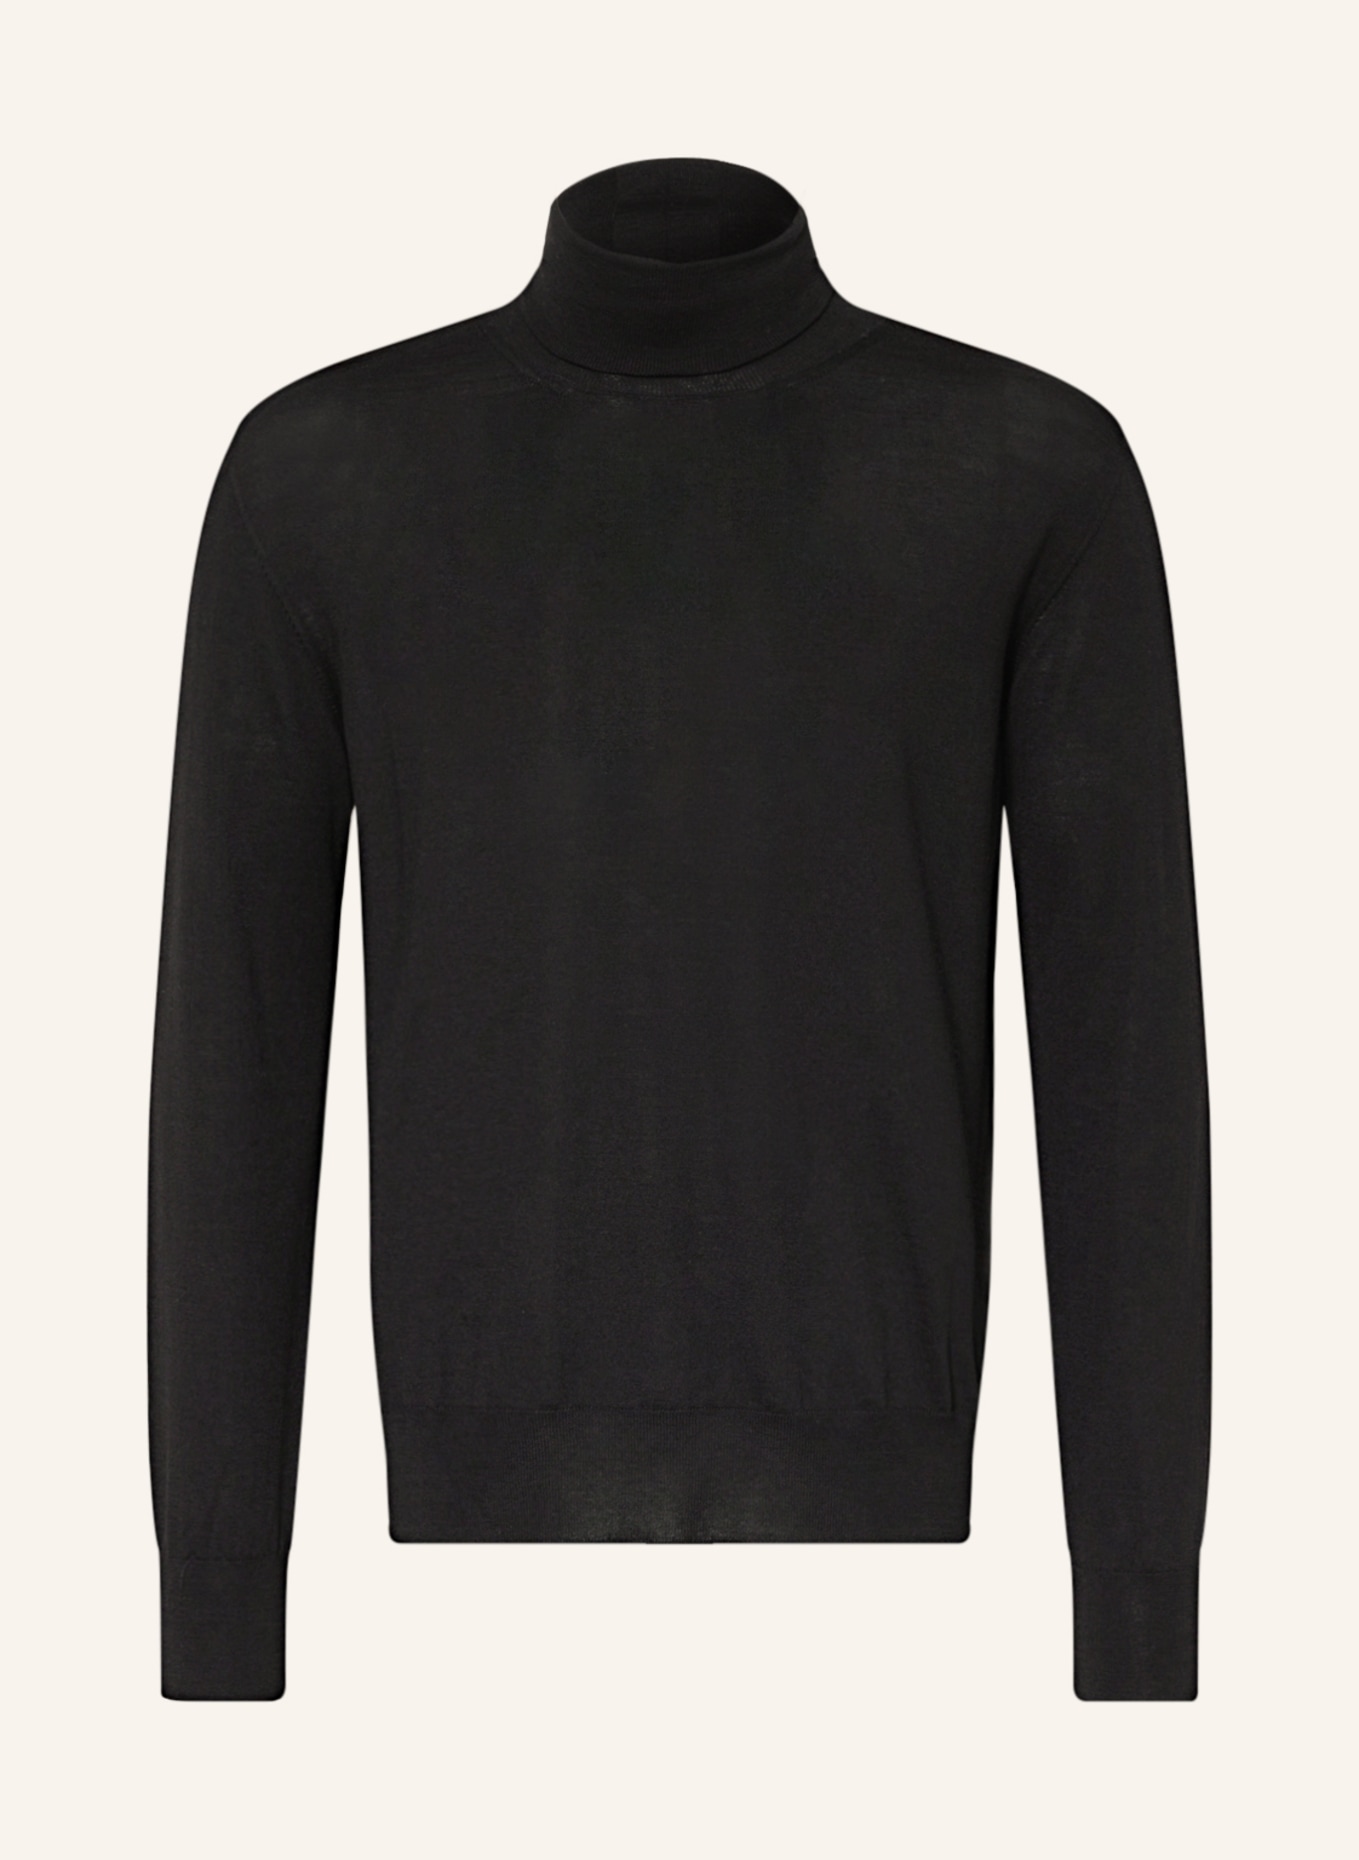 JIL SANDER Turtleneck sweater, Color: BLACK (Image 1)